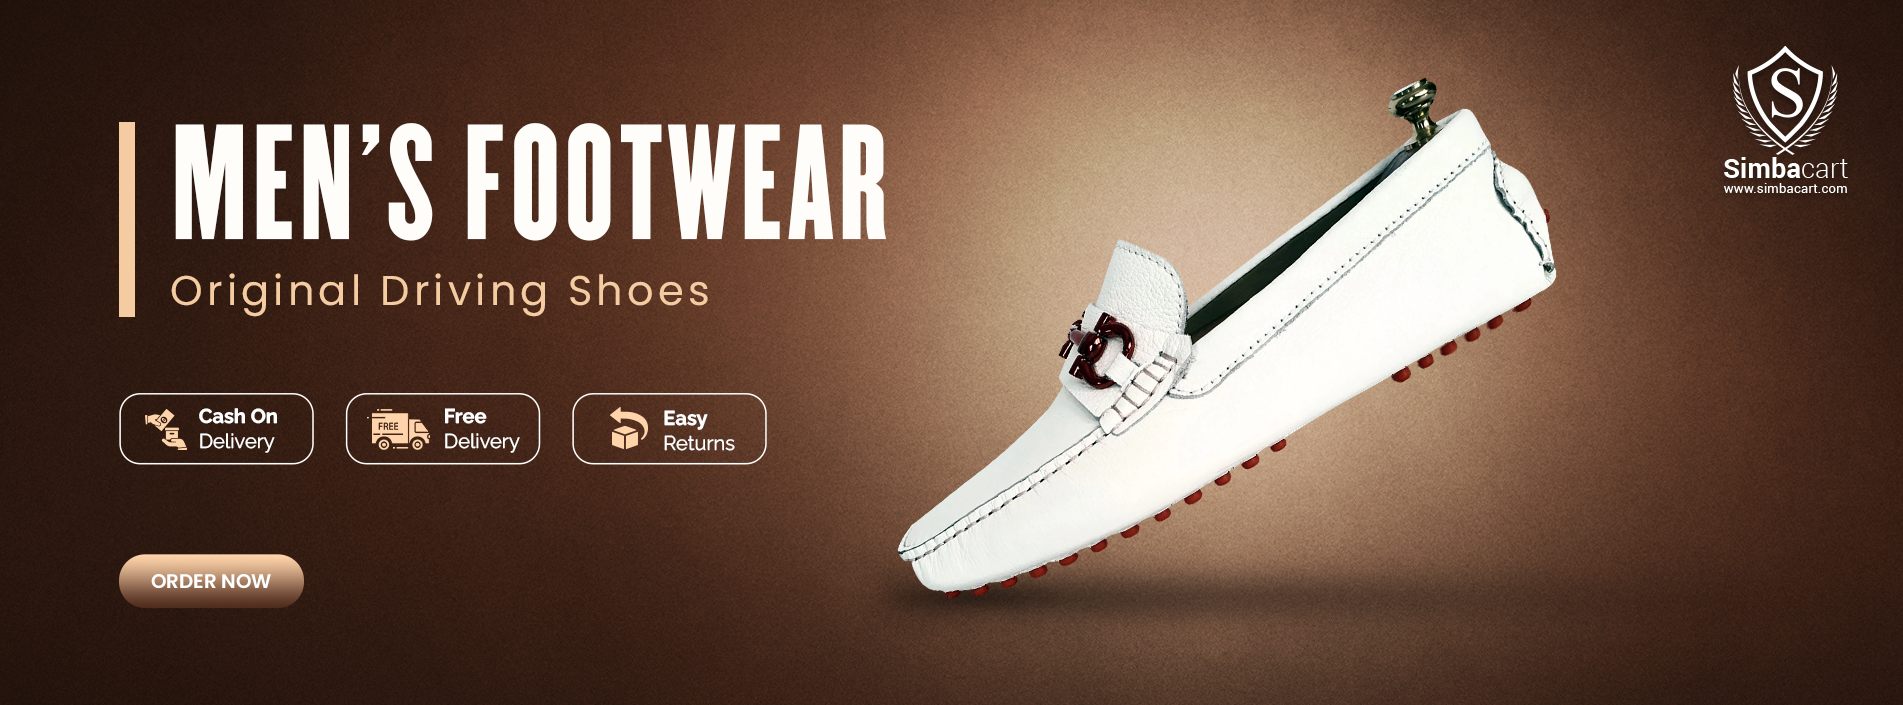 Simbacart - Online Shoe Shopping